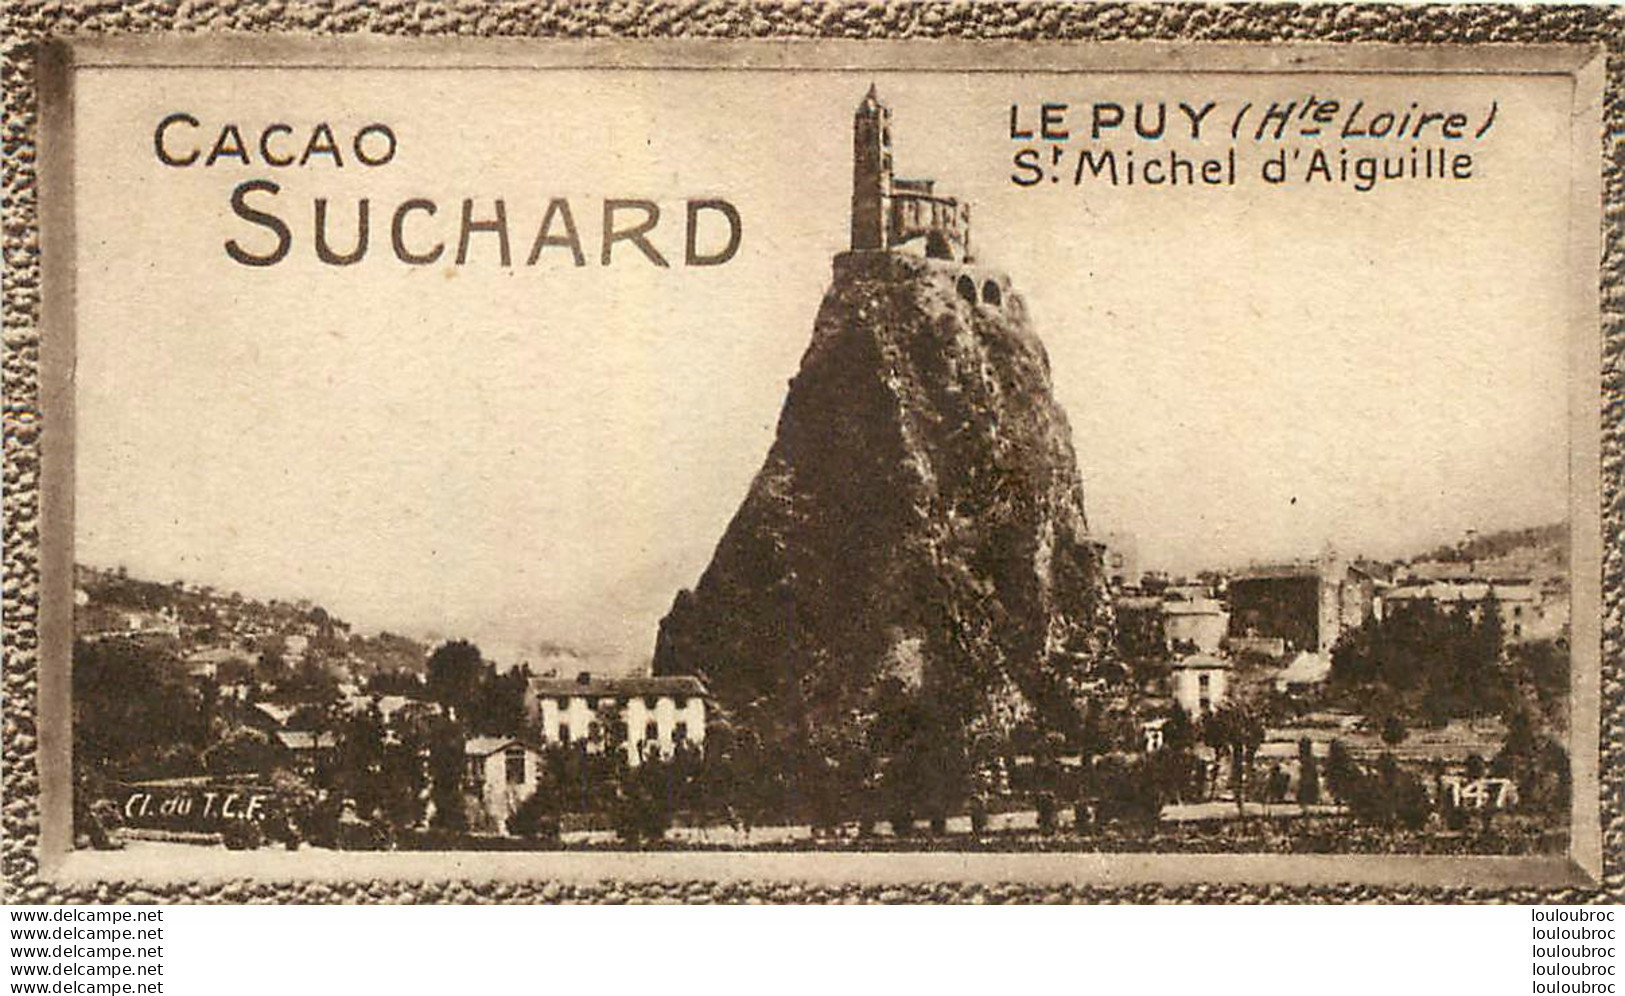 CHROMO CACAO SUCHARD LE PUY ST MICHEL D'AIGUILLE CL TU T.C.F. - Suchard